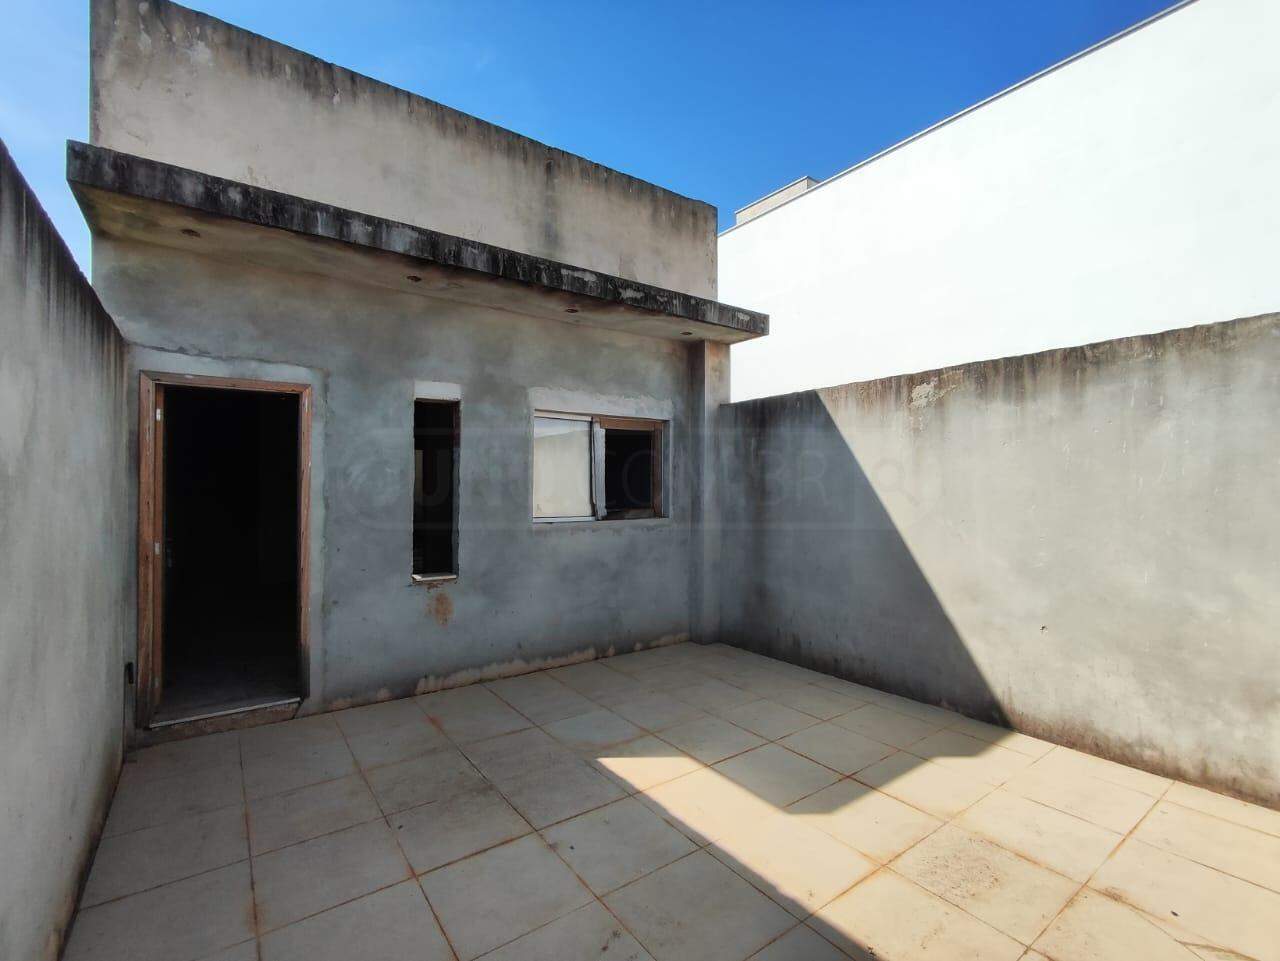 Casa à venda, 2 quartos, sendo 1 suíte, 2 vagas, no bairro Jardim São Cristóvão II em Rio das Pedras - SP